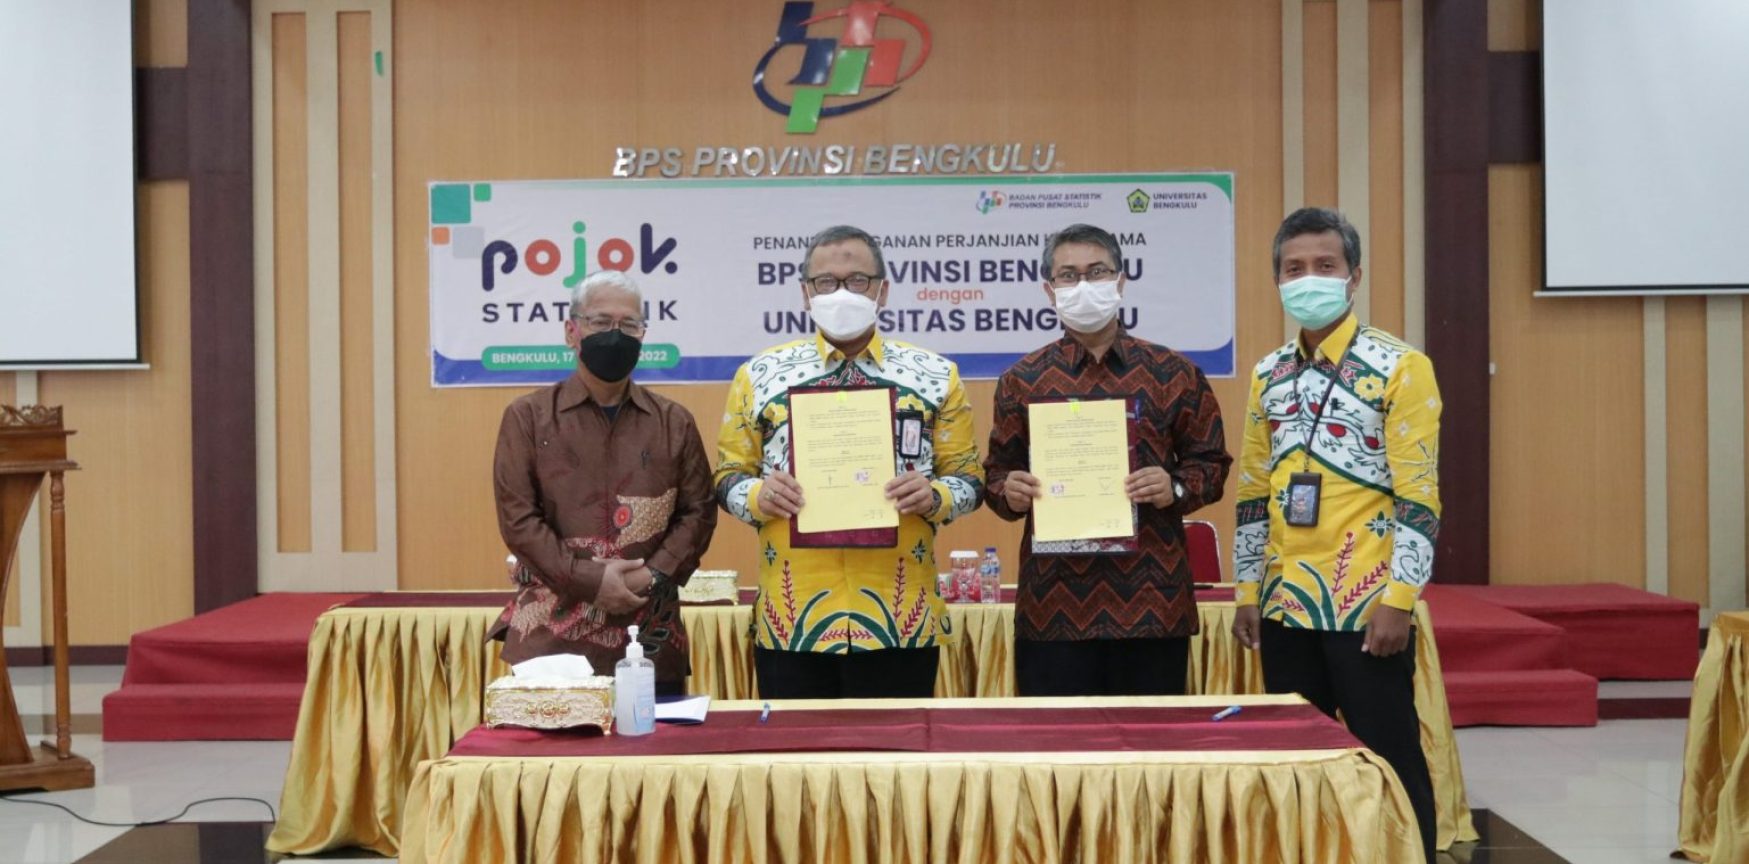 Penandatanganan Perjanjian Kerja Sama antara Universitas Bengkulu dengan Badan Pusat Statistik Provinsi Bengkulu tentang Pojok Statistik